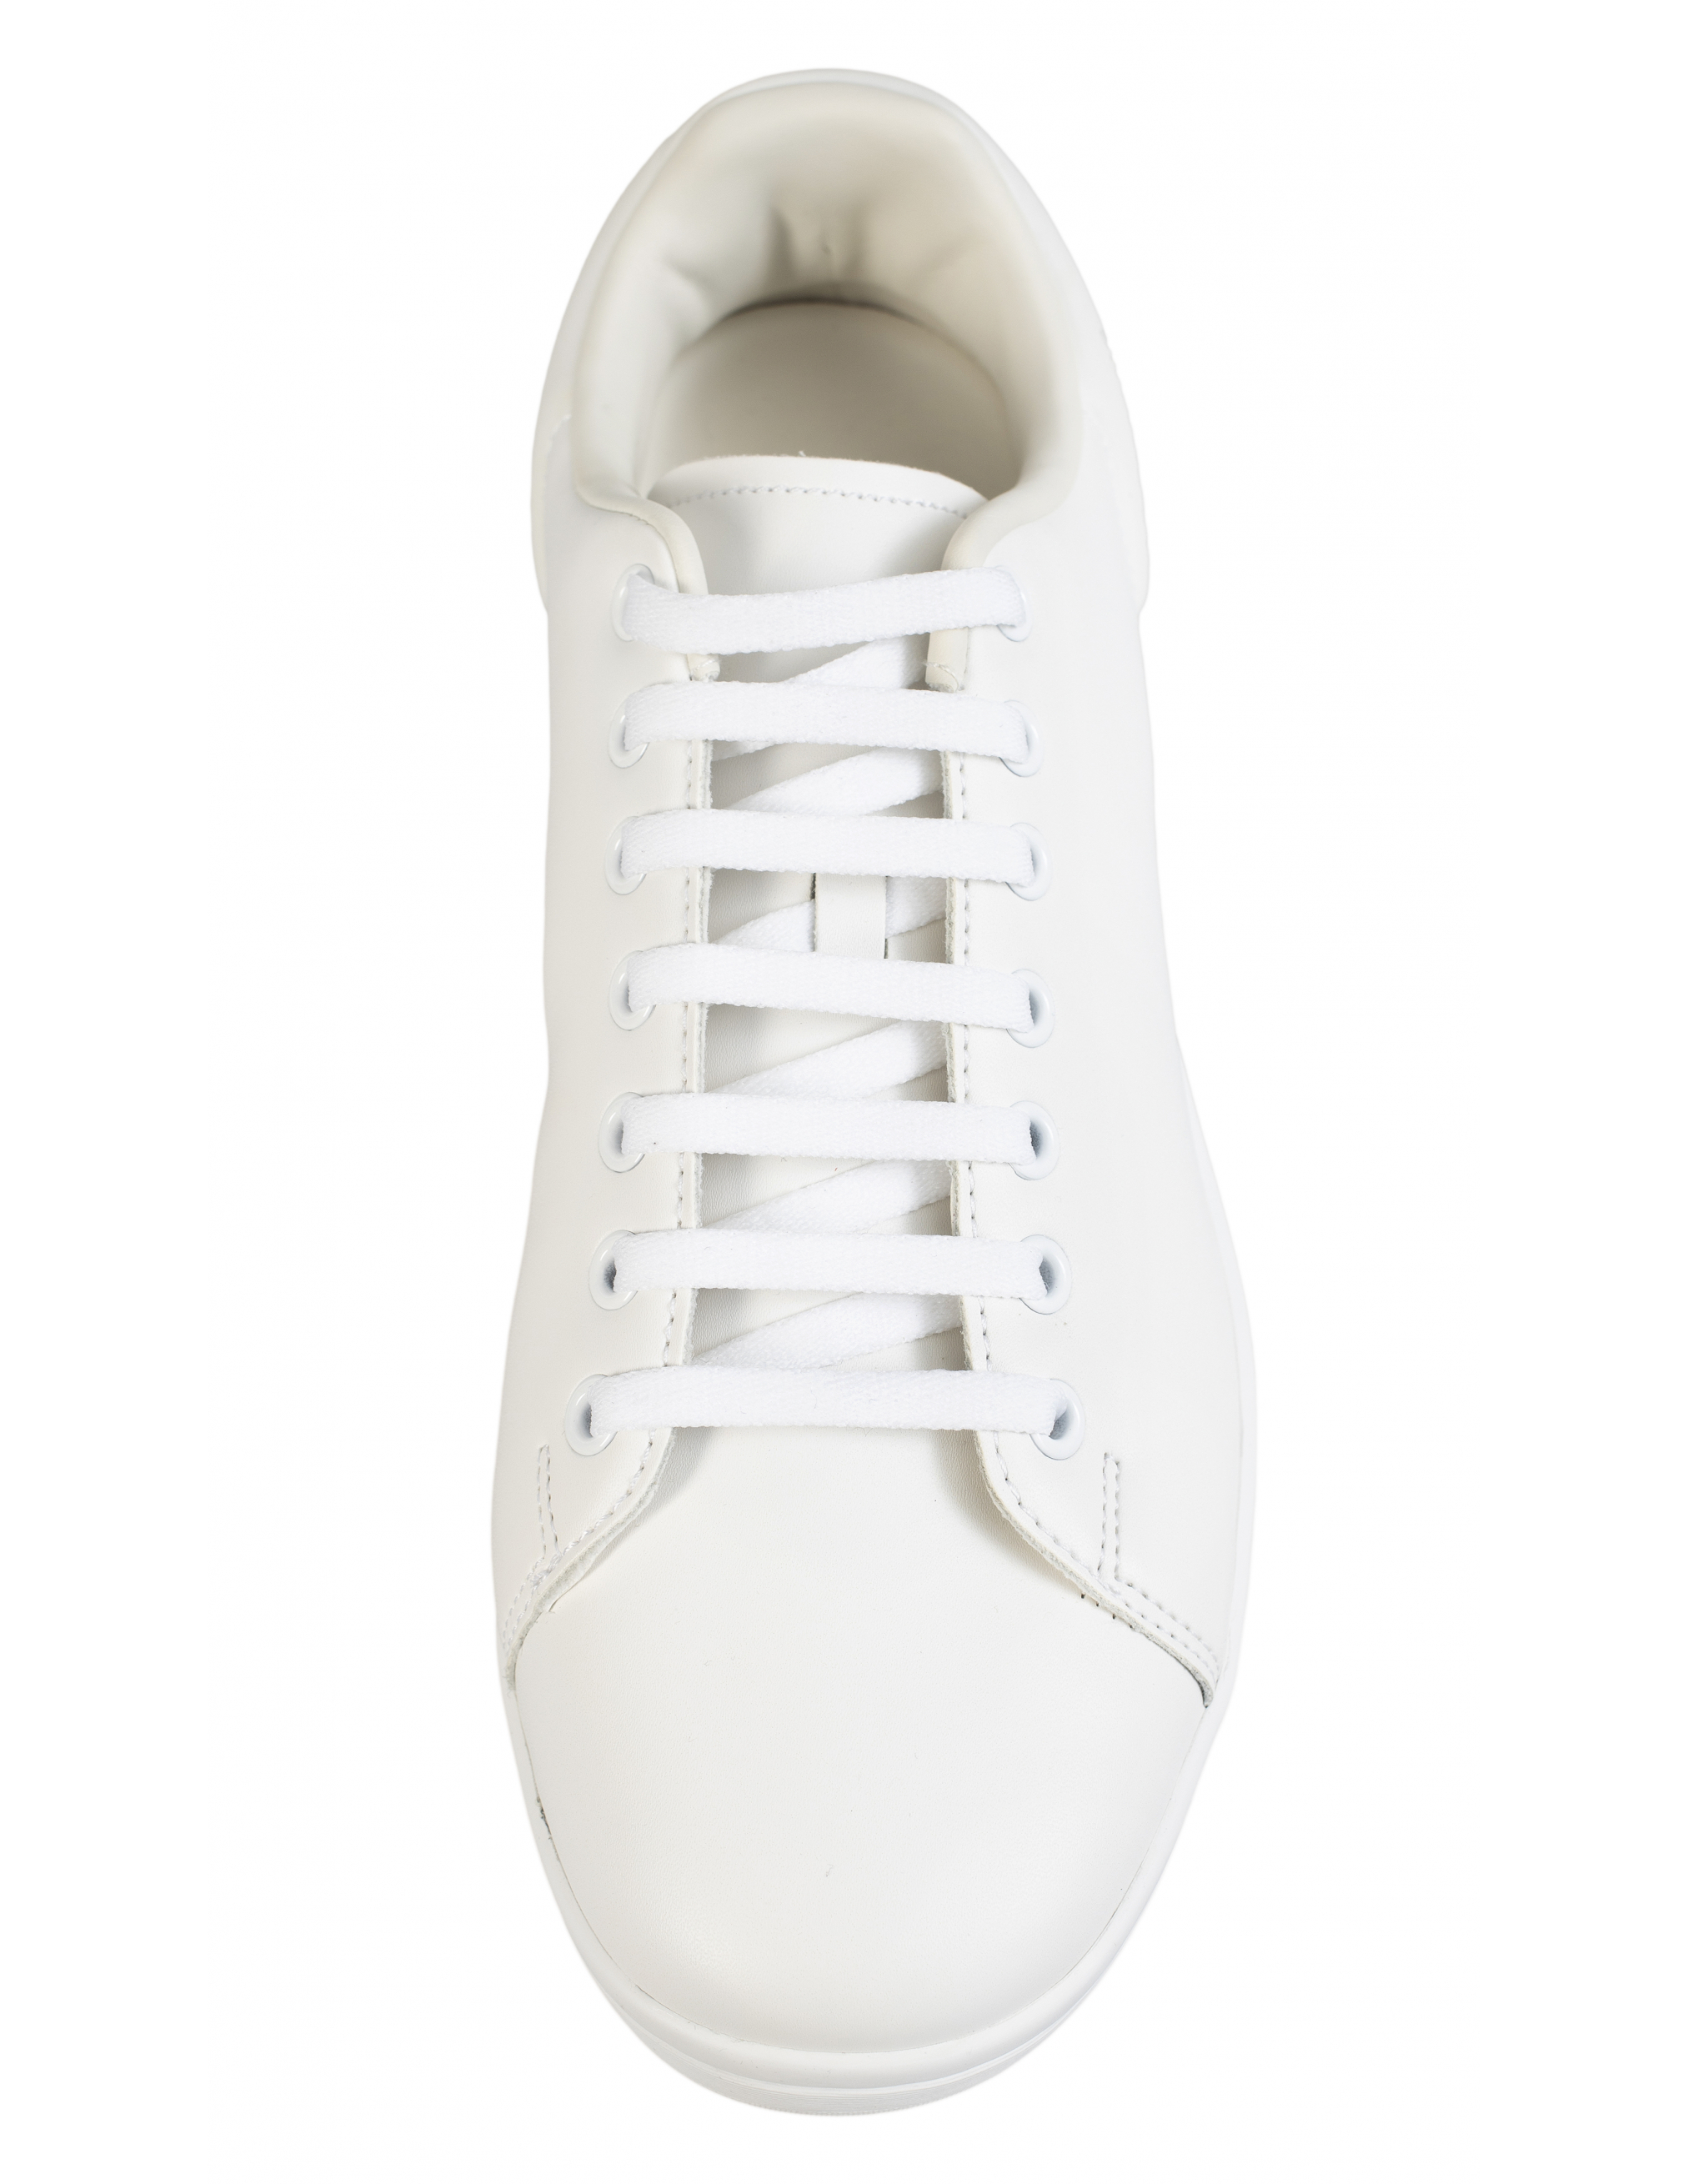 Белые кроссовки Orion Raf Simons HR760001S/0061, размер 45;44;43;42;41;40;39;38;37 HR760001S/0061 - фото 2